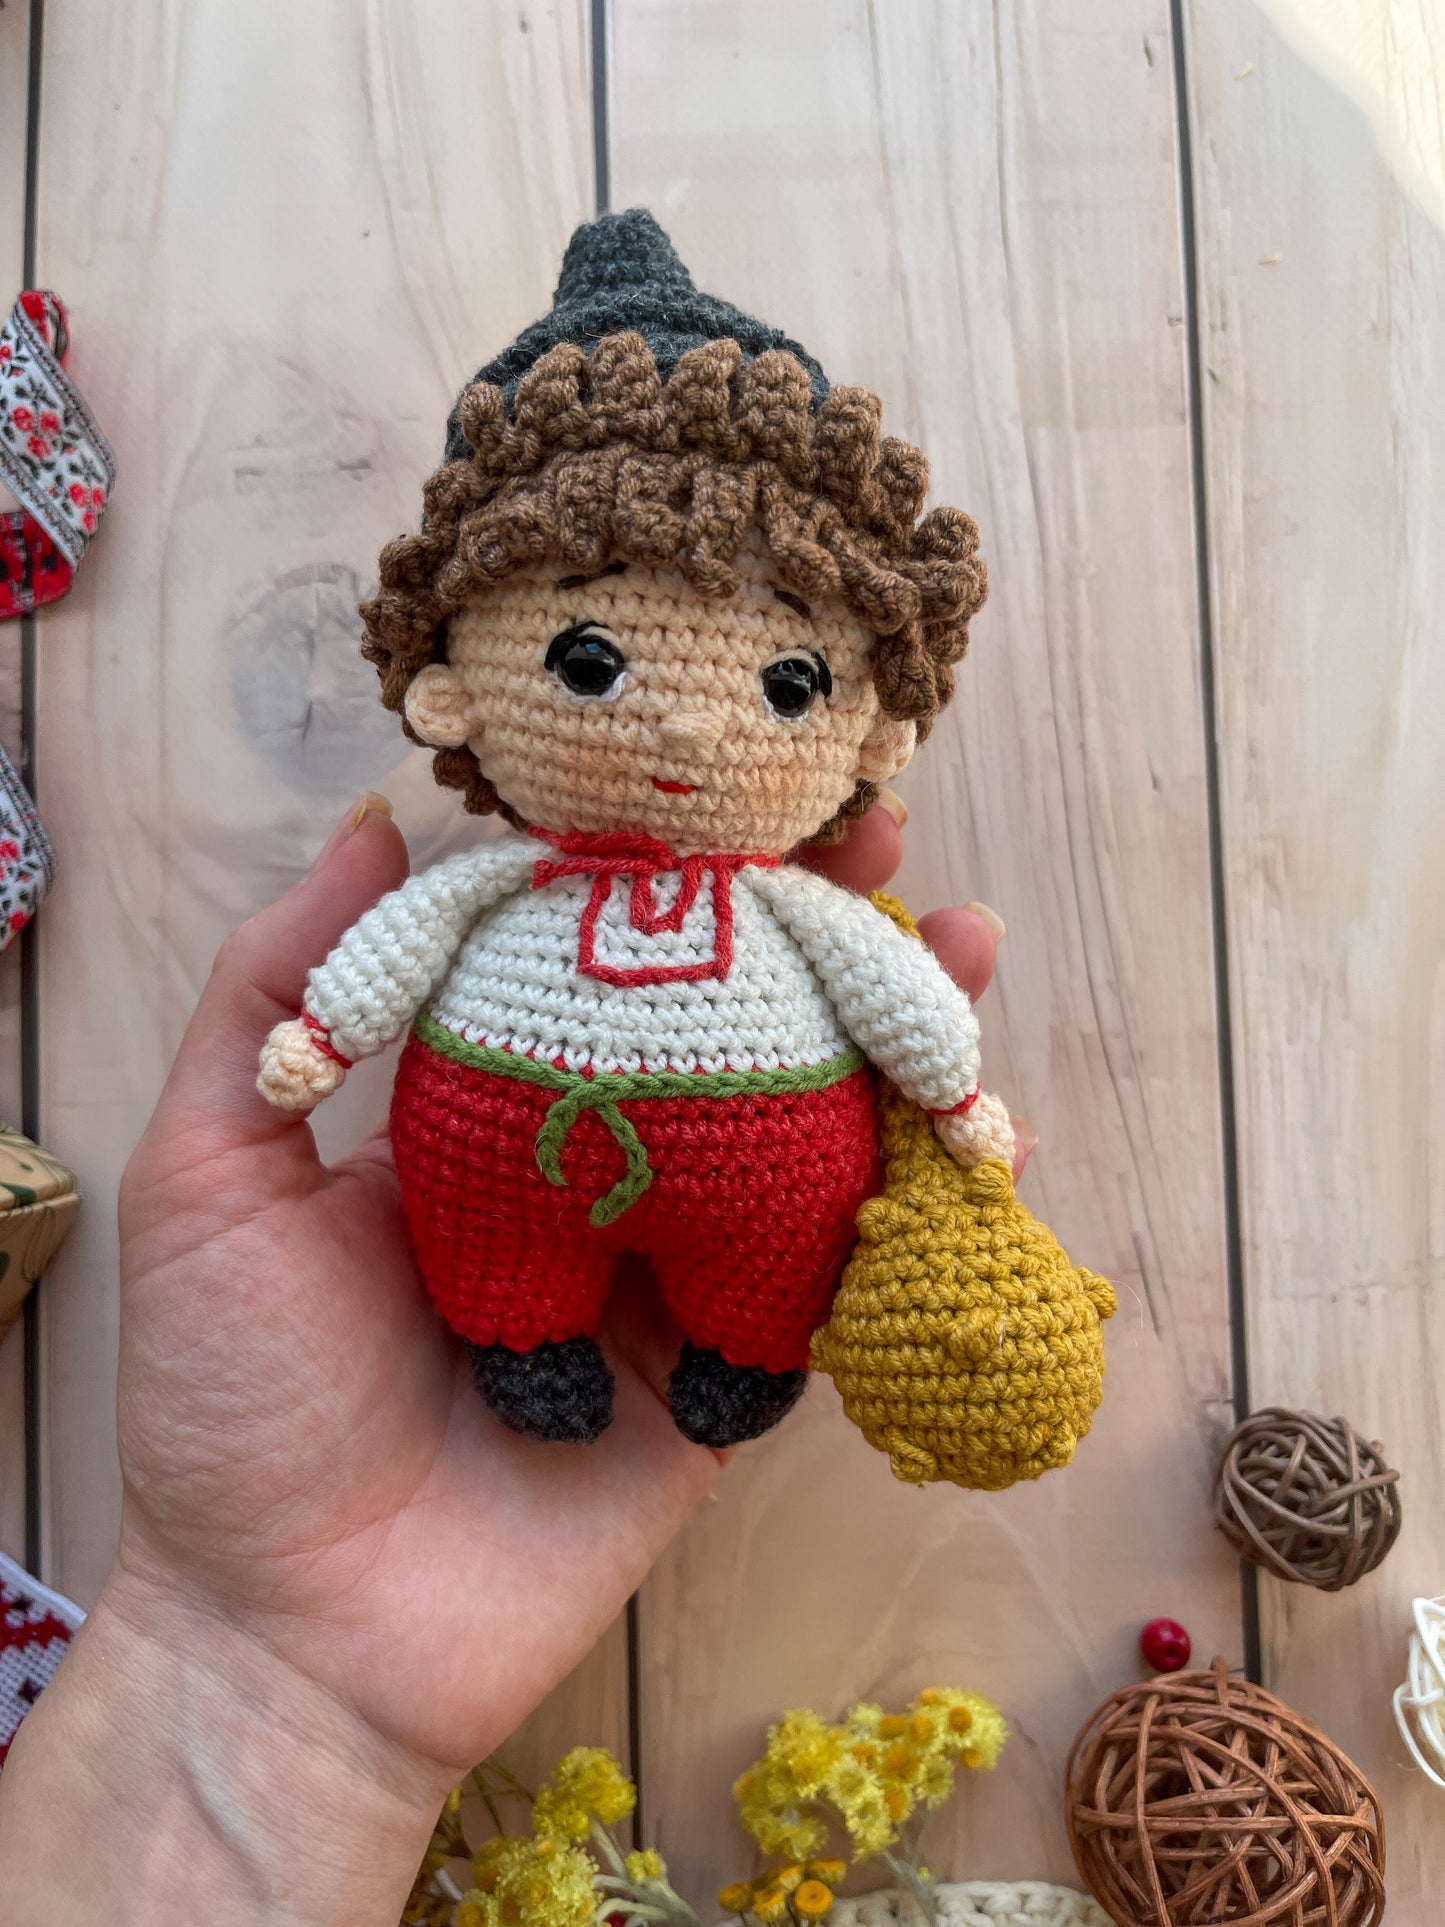 Ukrainian crochet doll, Ukrainian Cossack, knitted Ukrainian doll